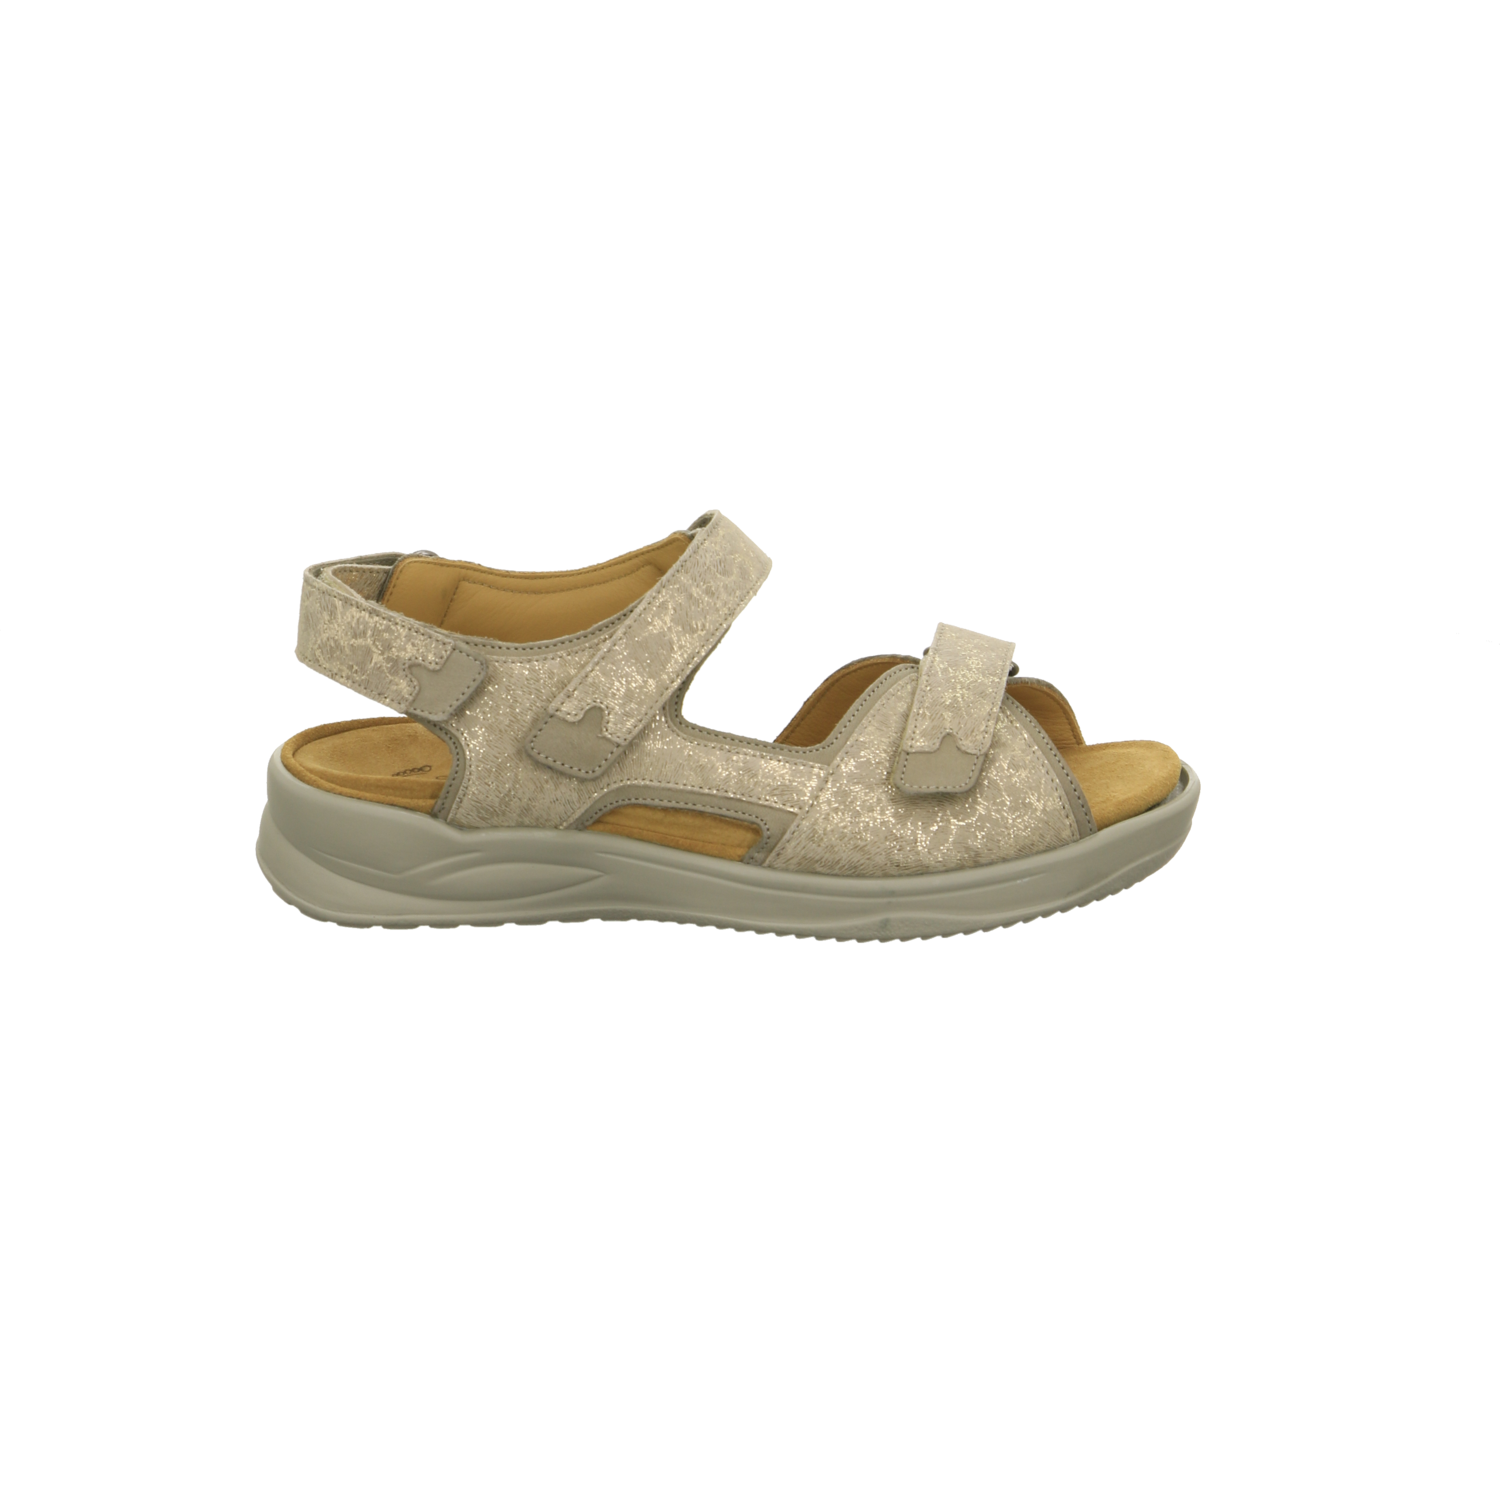 Ströber Comfort-Sandalette beige